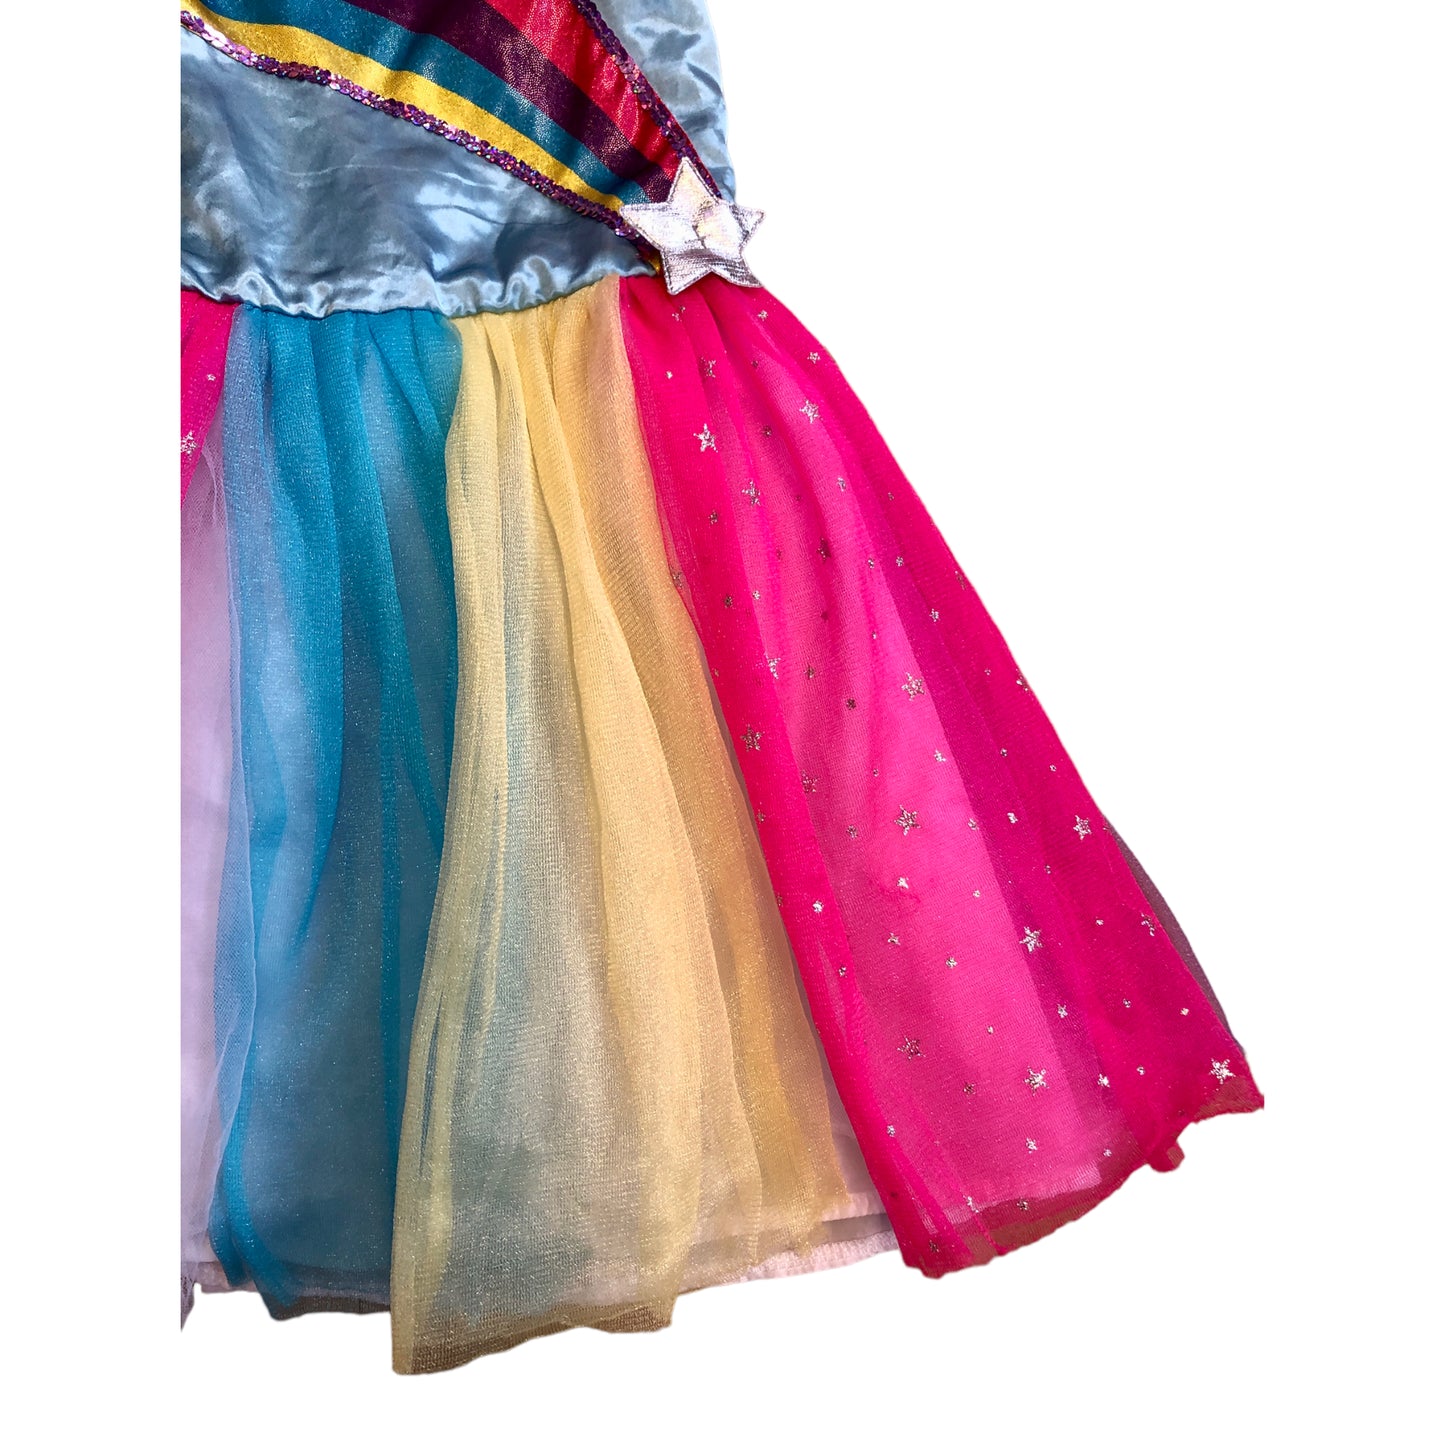 Robe multicolore (5/7 ans)